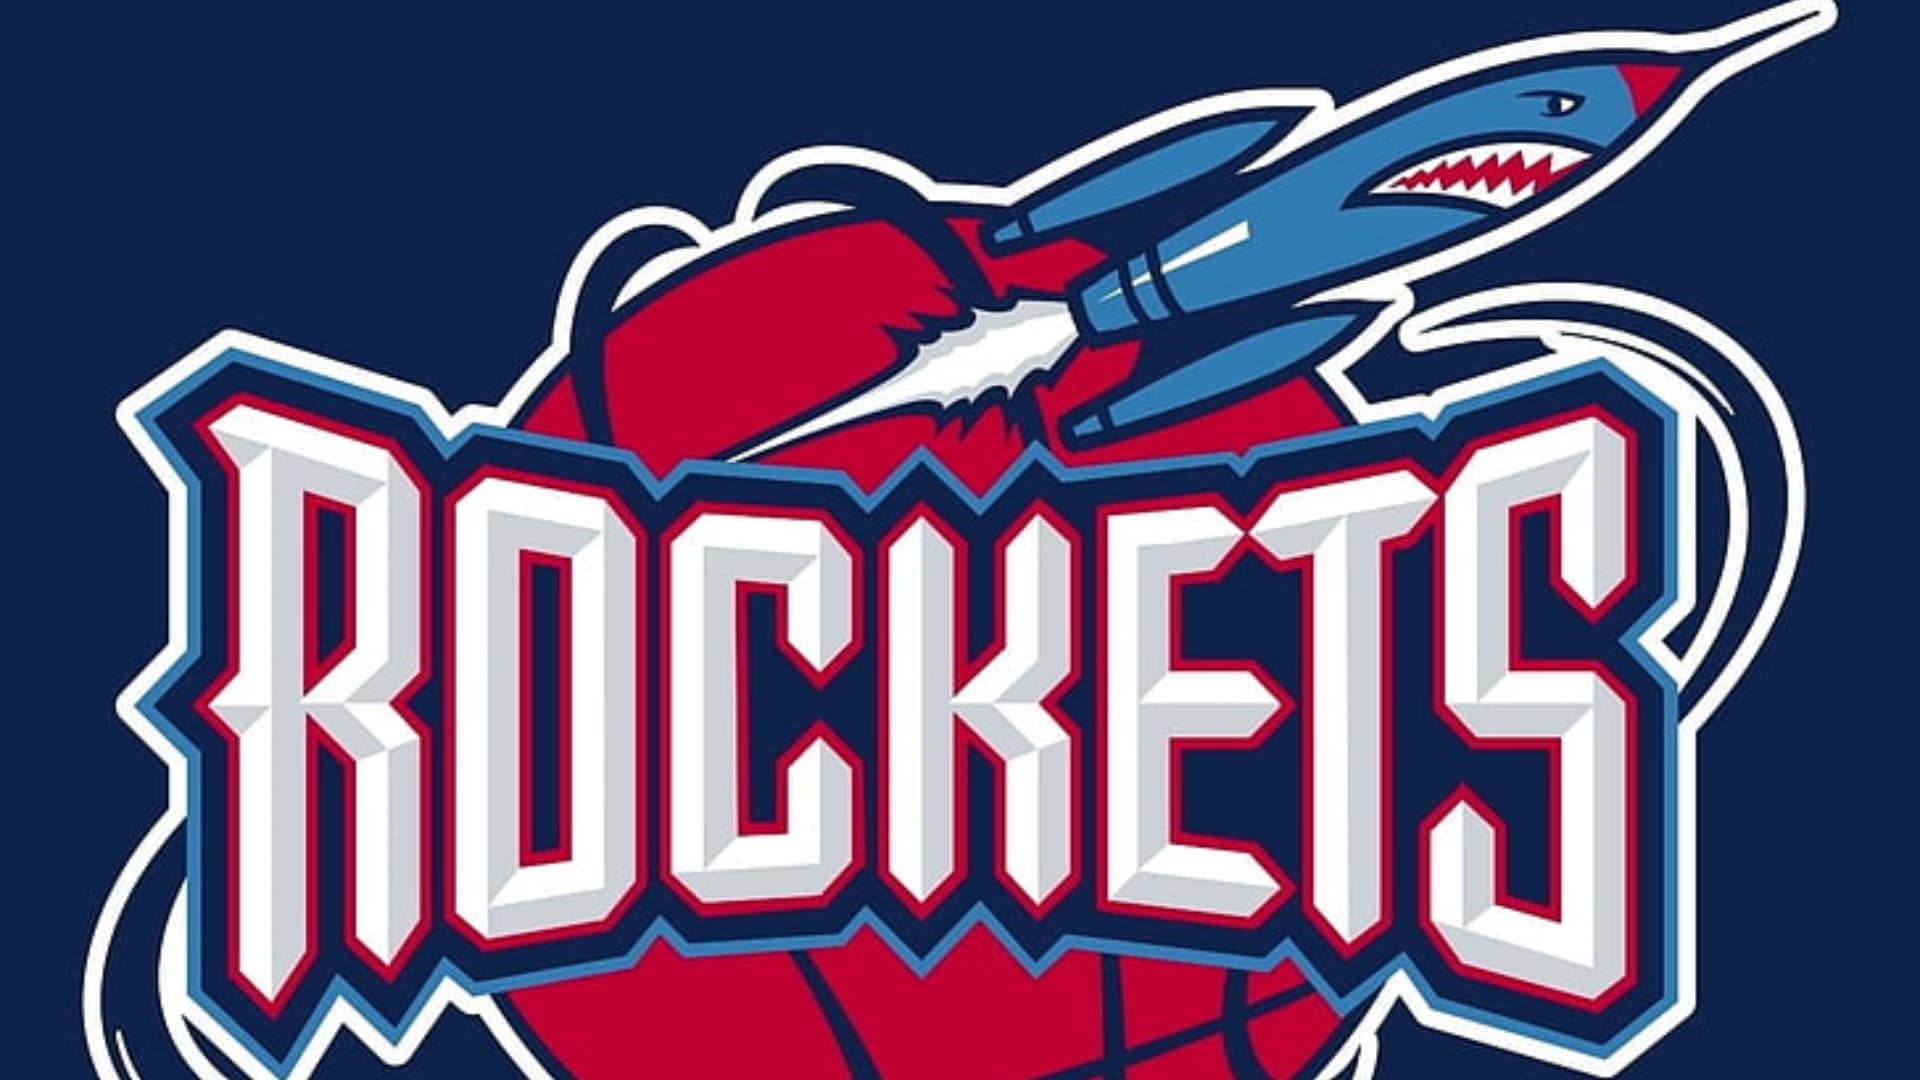 Houston Rockets- most followed NBA teams on Instagram